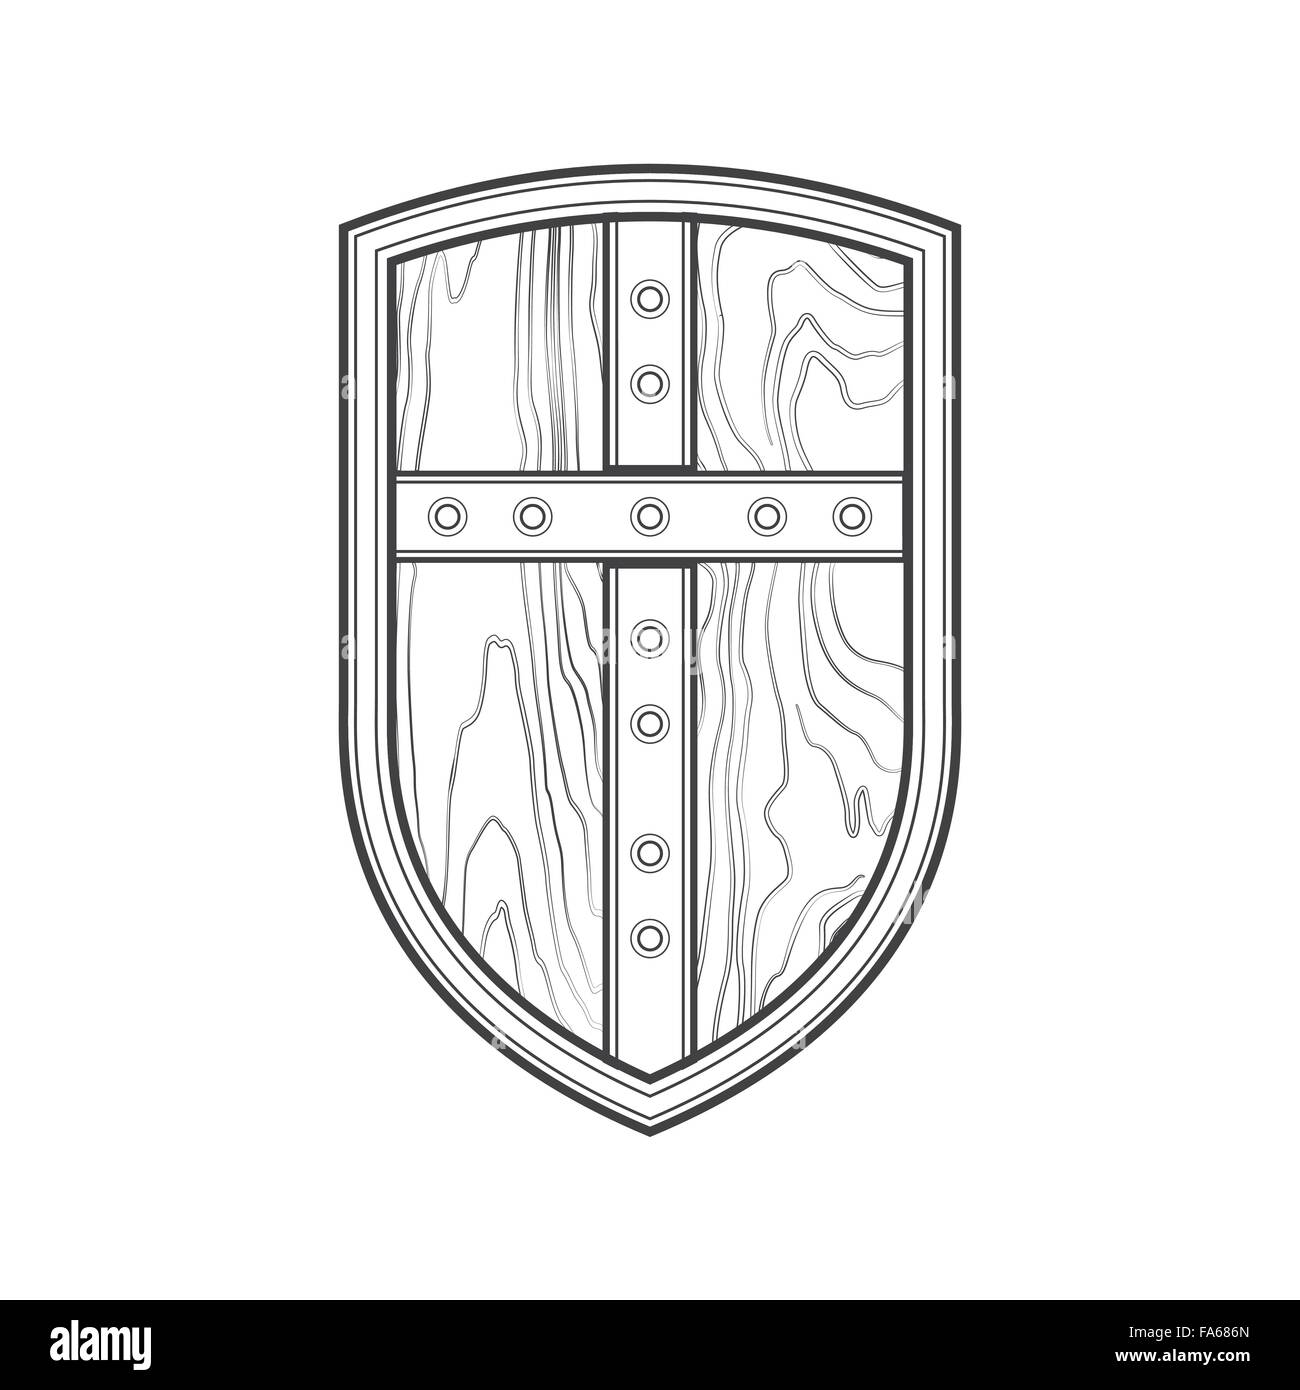 Contour en bois médiévale monochrome vecteur croix métallique texturé Crusader guerrier isolé bouclier contour noir illustration sur wh Illustration de Vecteur